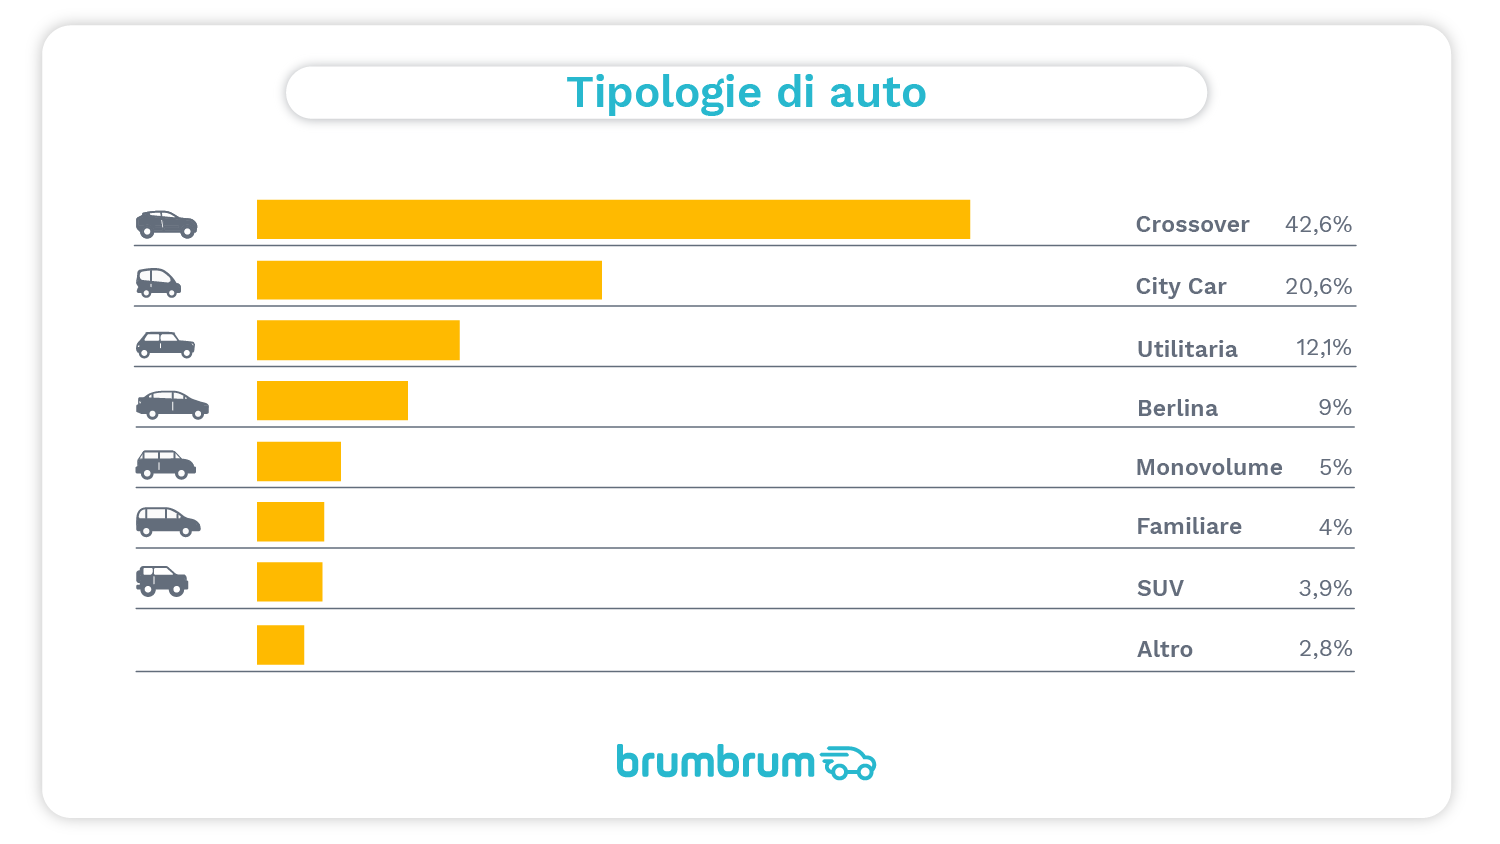 brumbrum - Tipologie auto a km 0 più vendute online